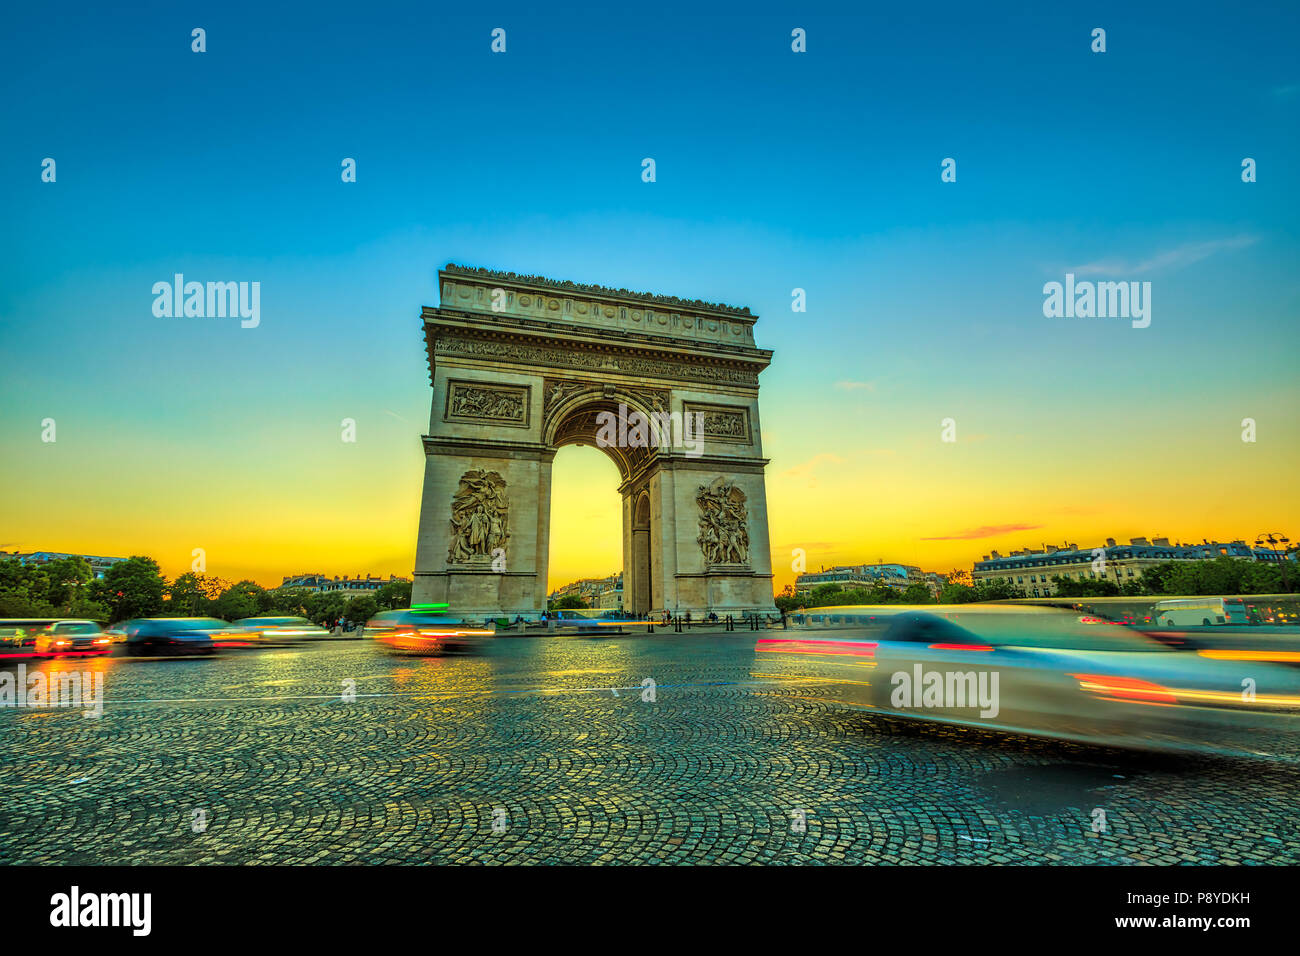 Arco di Trionfo. Arc de Triomphe all'estremità occidentale del Champs Elysees al centro di Place Charles de Gaulle di Parigi al tramonto con il traffico automobilistico. Parigi capitale della Francia in Europa. Foto Stock